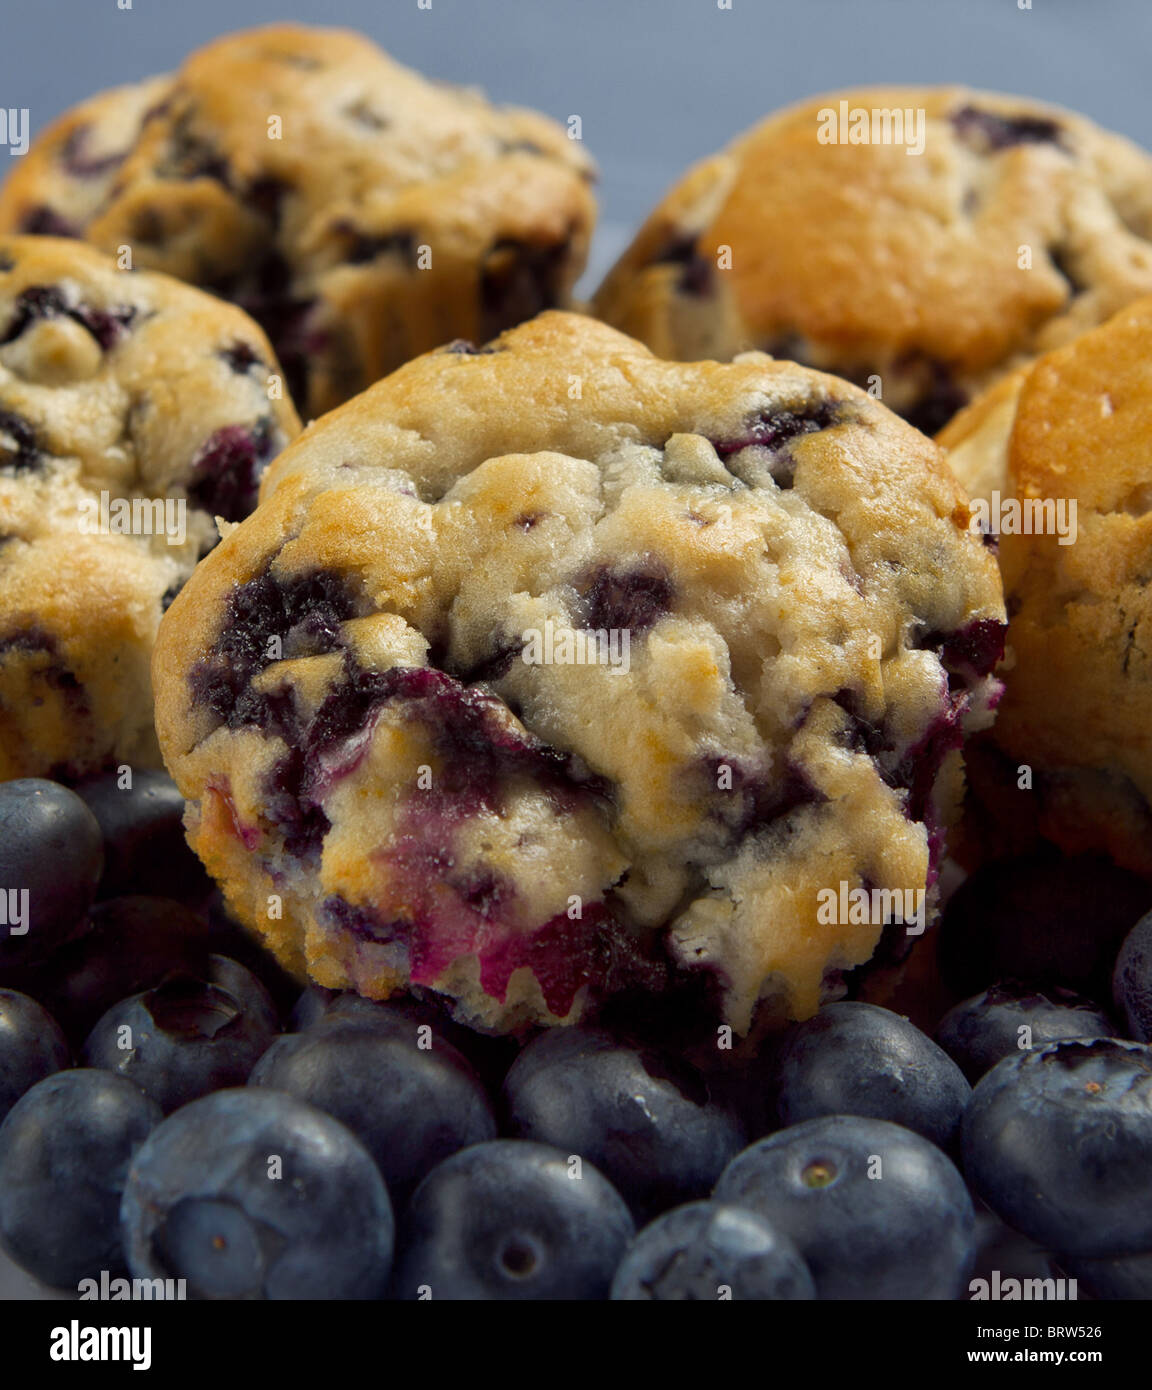 Petite pile de muffins aux bleuets et bleuets frais sur un fond bleu closeup Banque D'Images